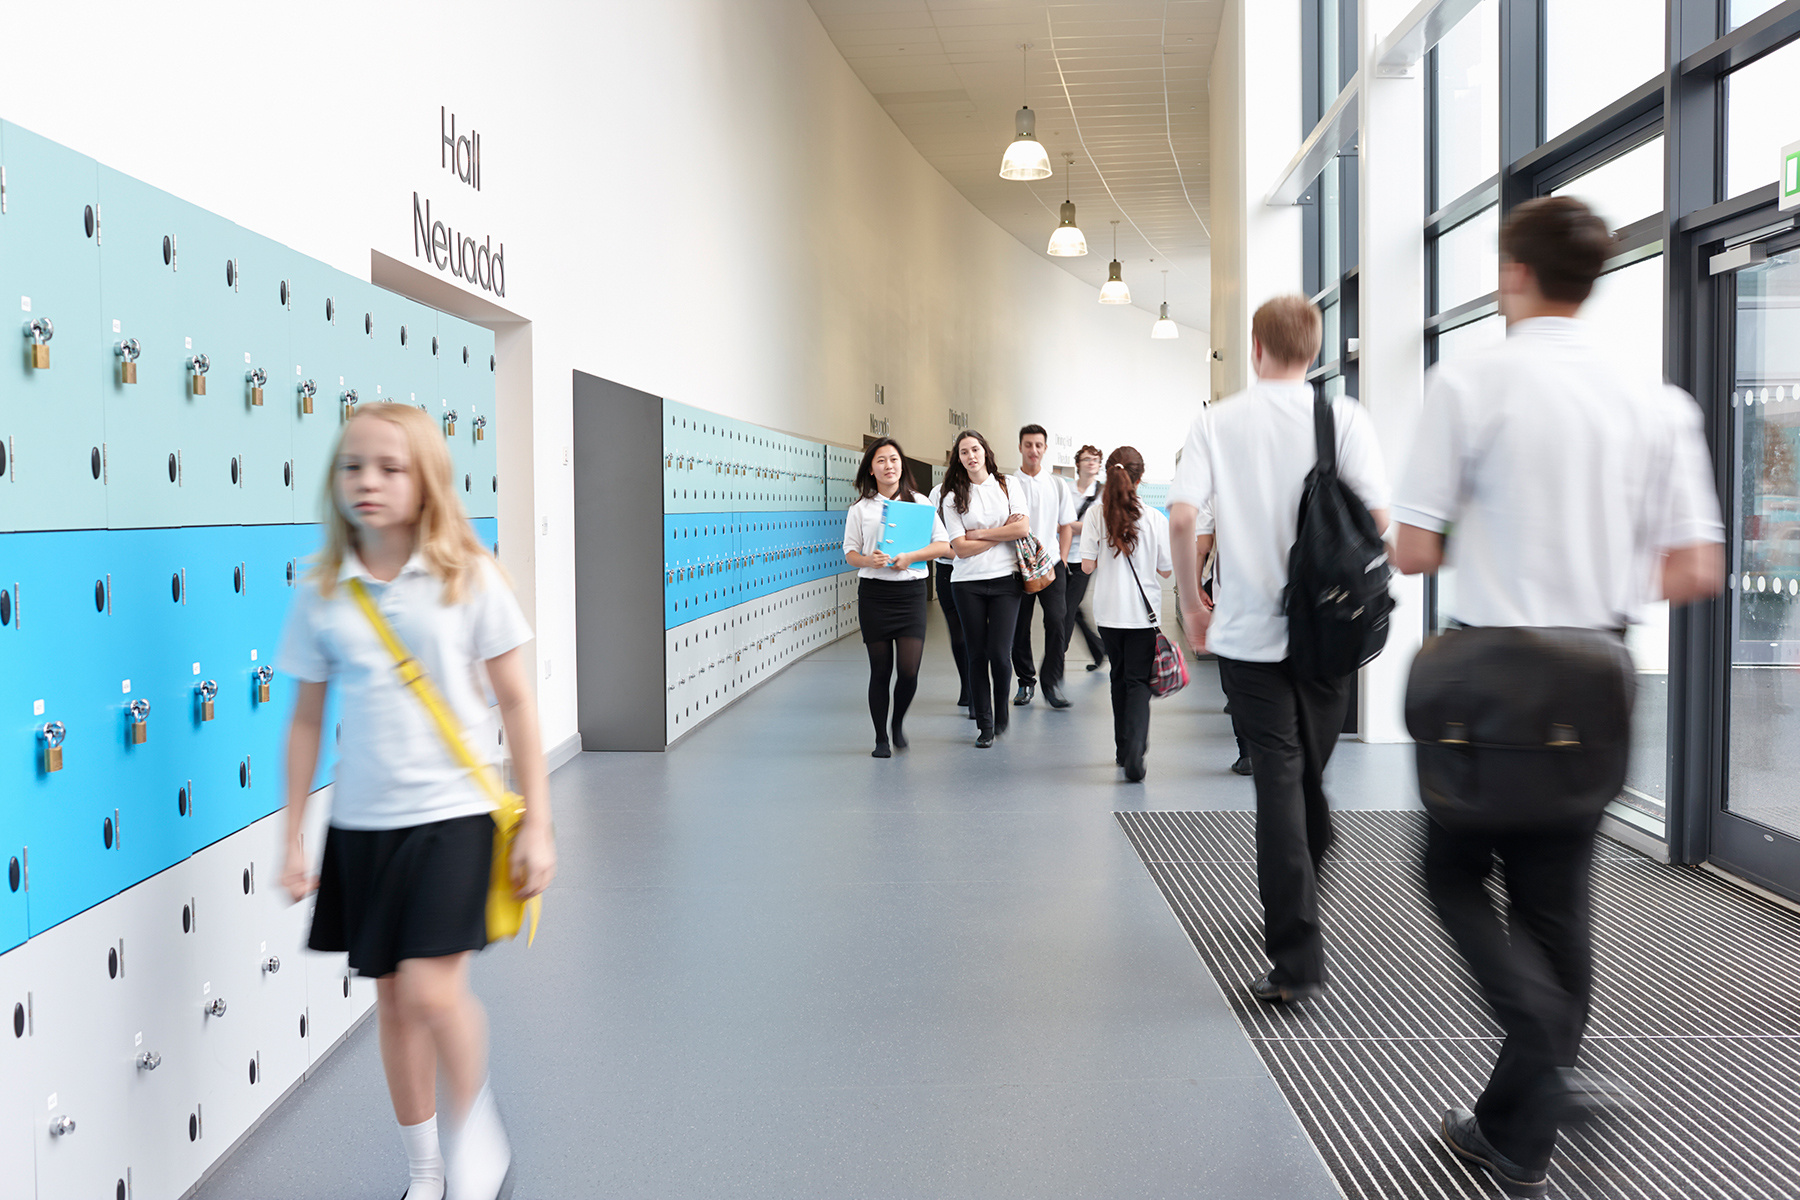 Students walking in a school corridor between lessons